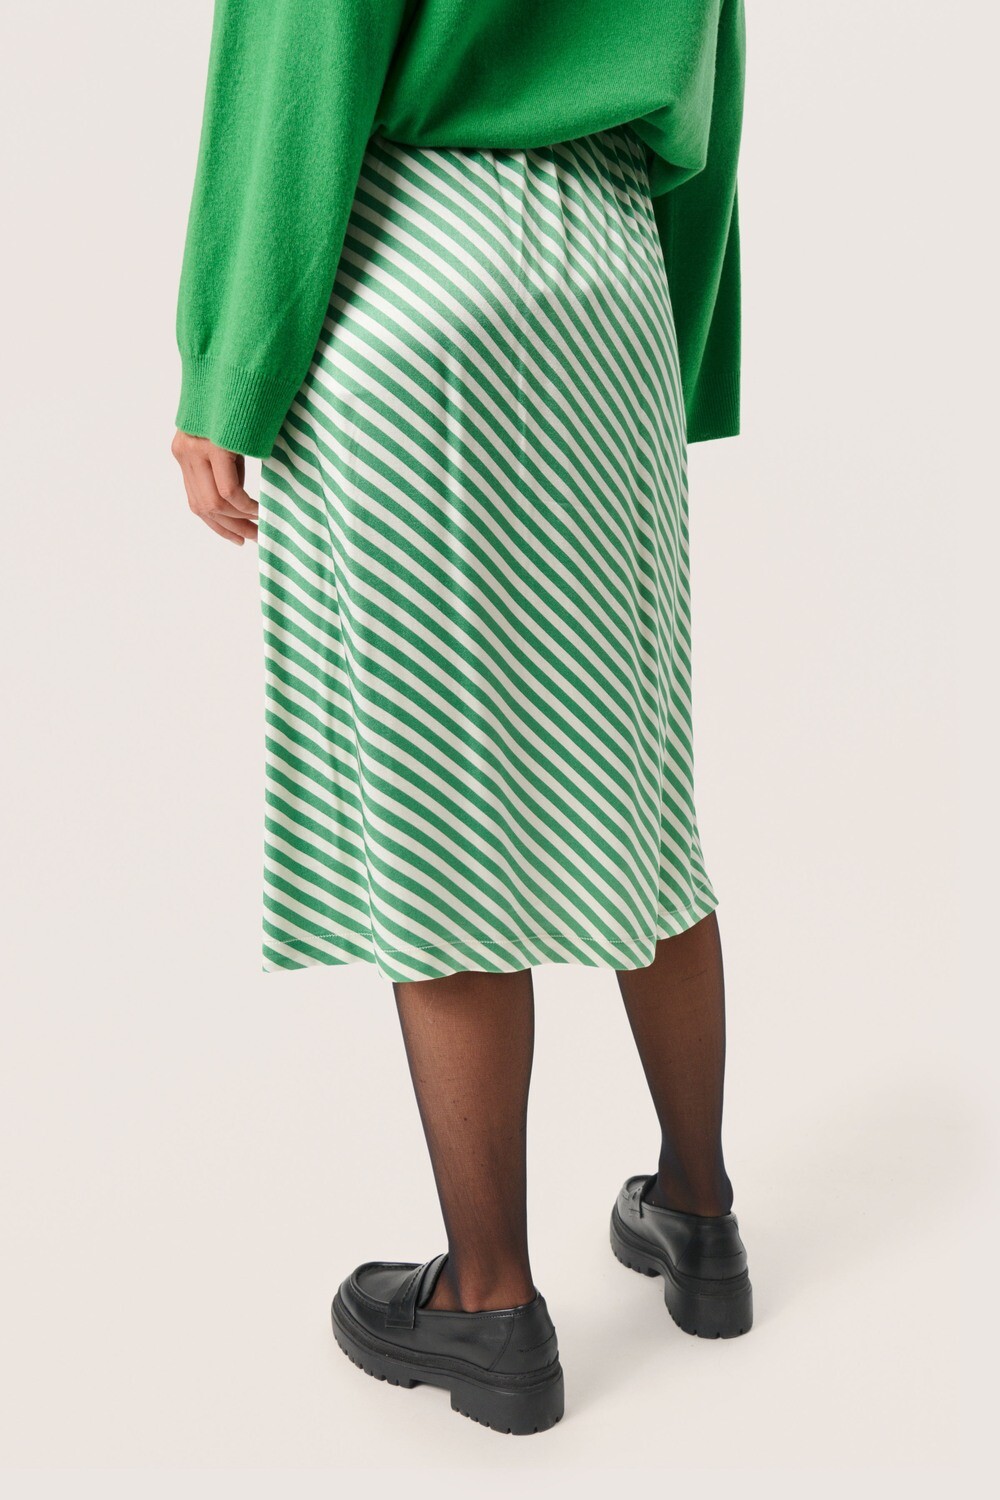 Soaked - Soho Skirt (Green & White Stripes)